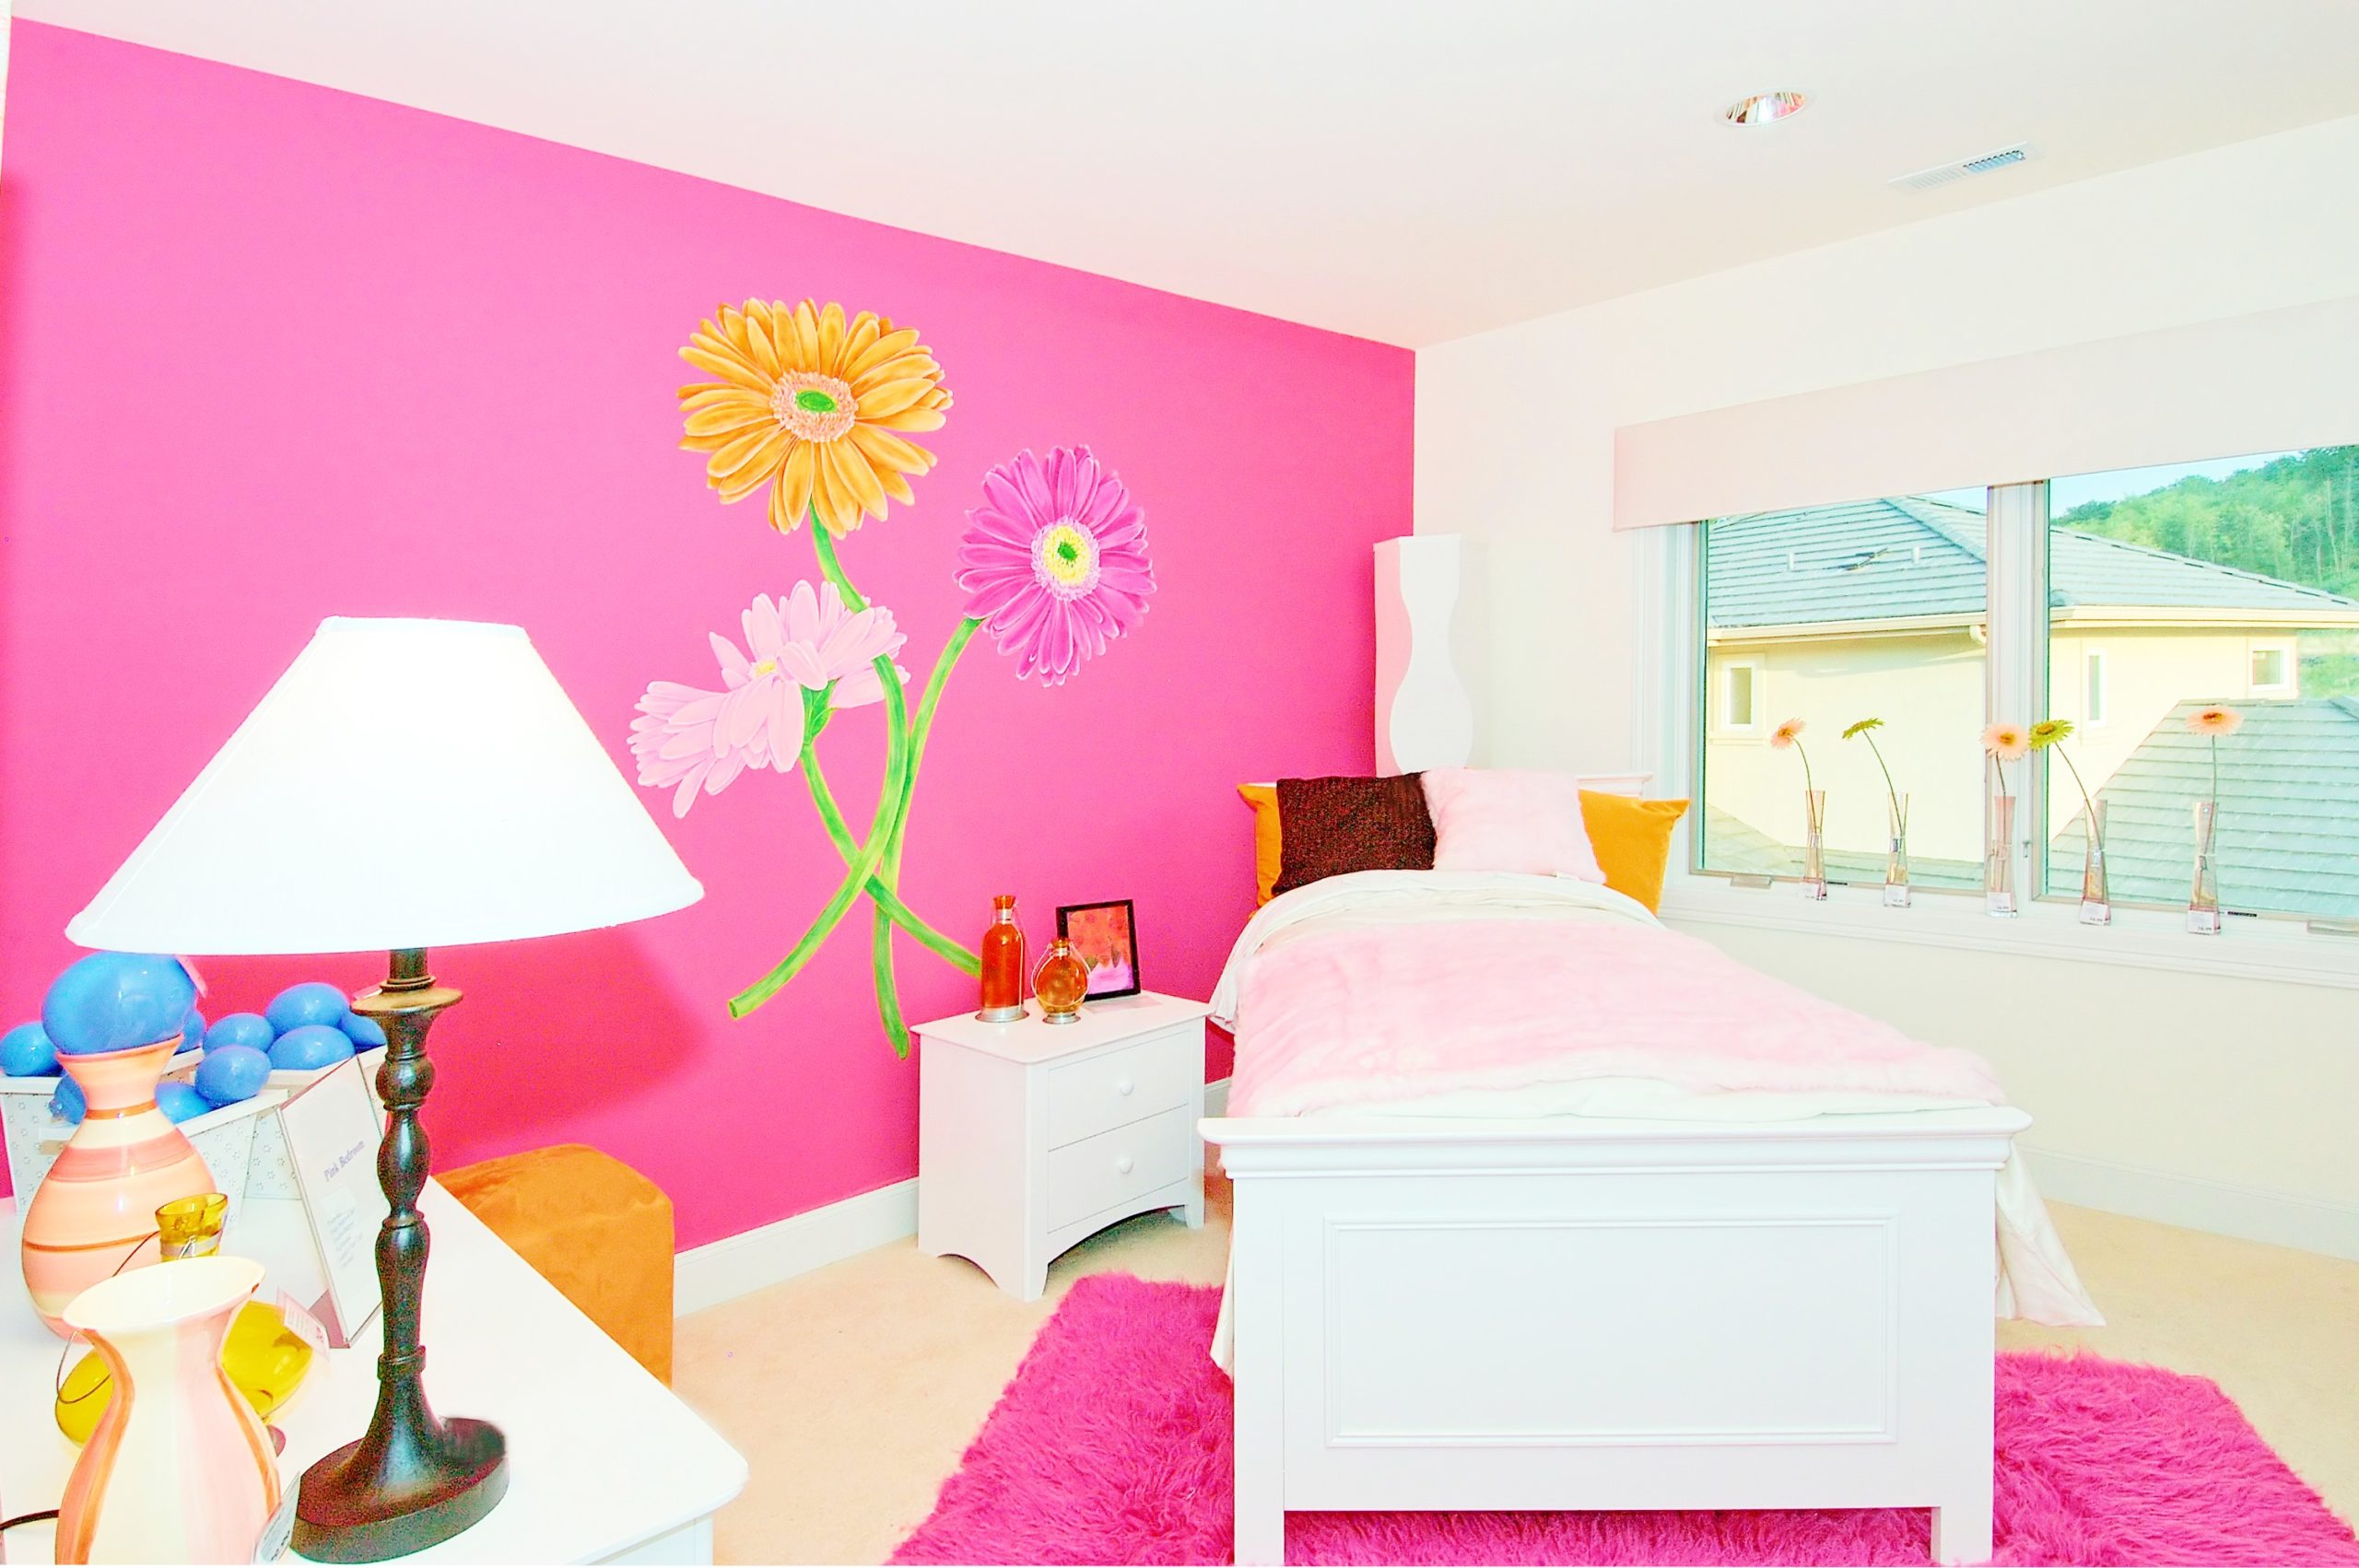 <img src="bright.jpg" alt="bright magenta floral room"/> 